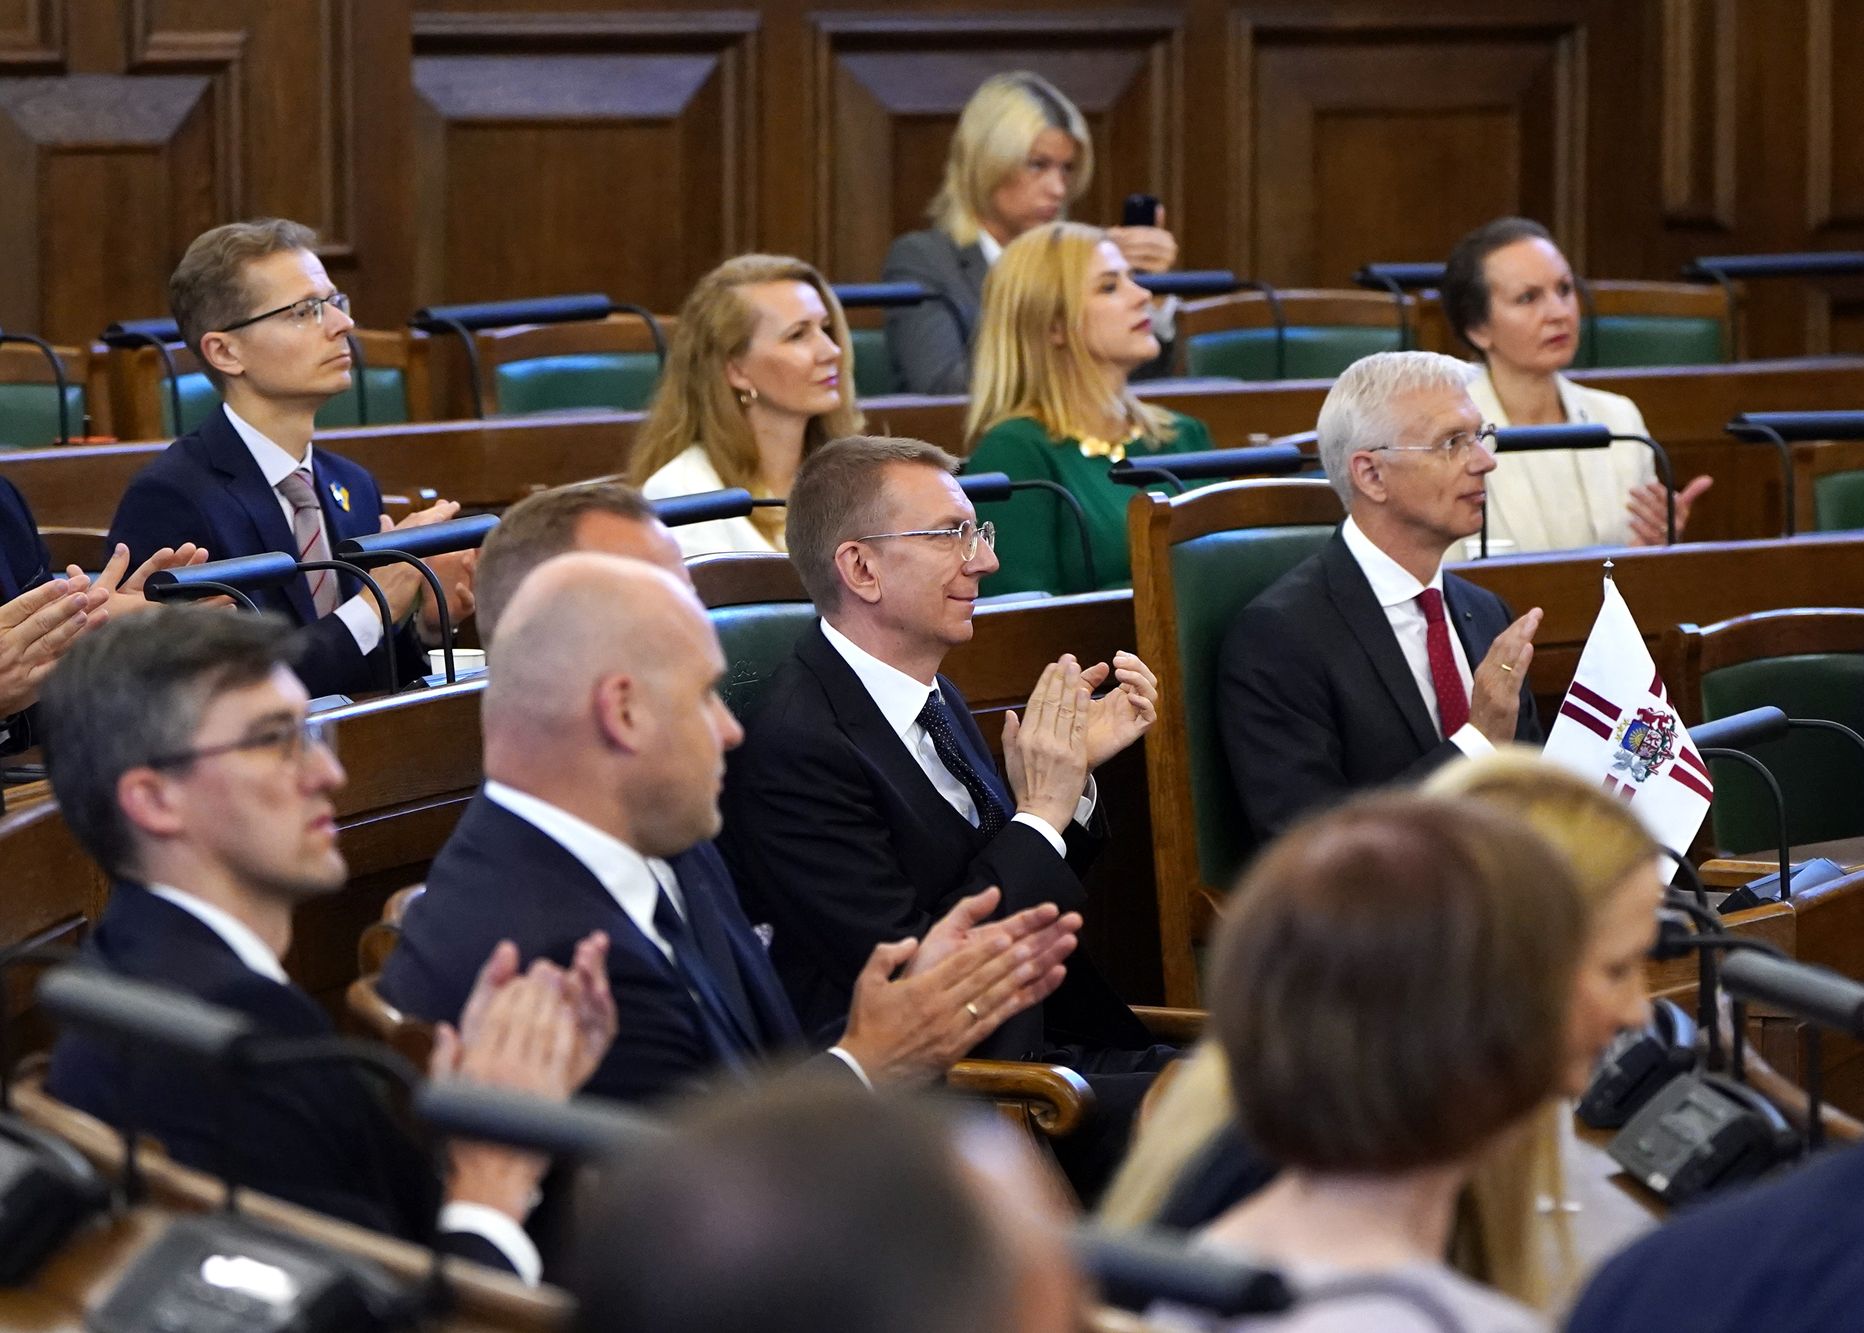 Jaunais Valsts prezidents Edgars Rinkēvičs (centrā) un Ministru prezidents Krišjānis Kariņš (no labās) piedalās Saeimas ārkārtas sēdē, kurā Valsts prezidents saka uzrunu klātesošajiem un nodod svinīgo solījumu.